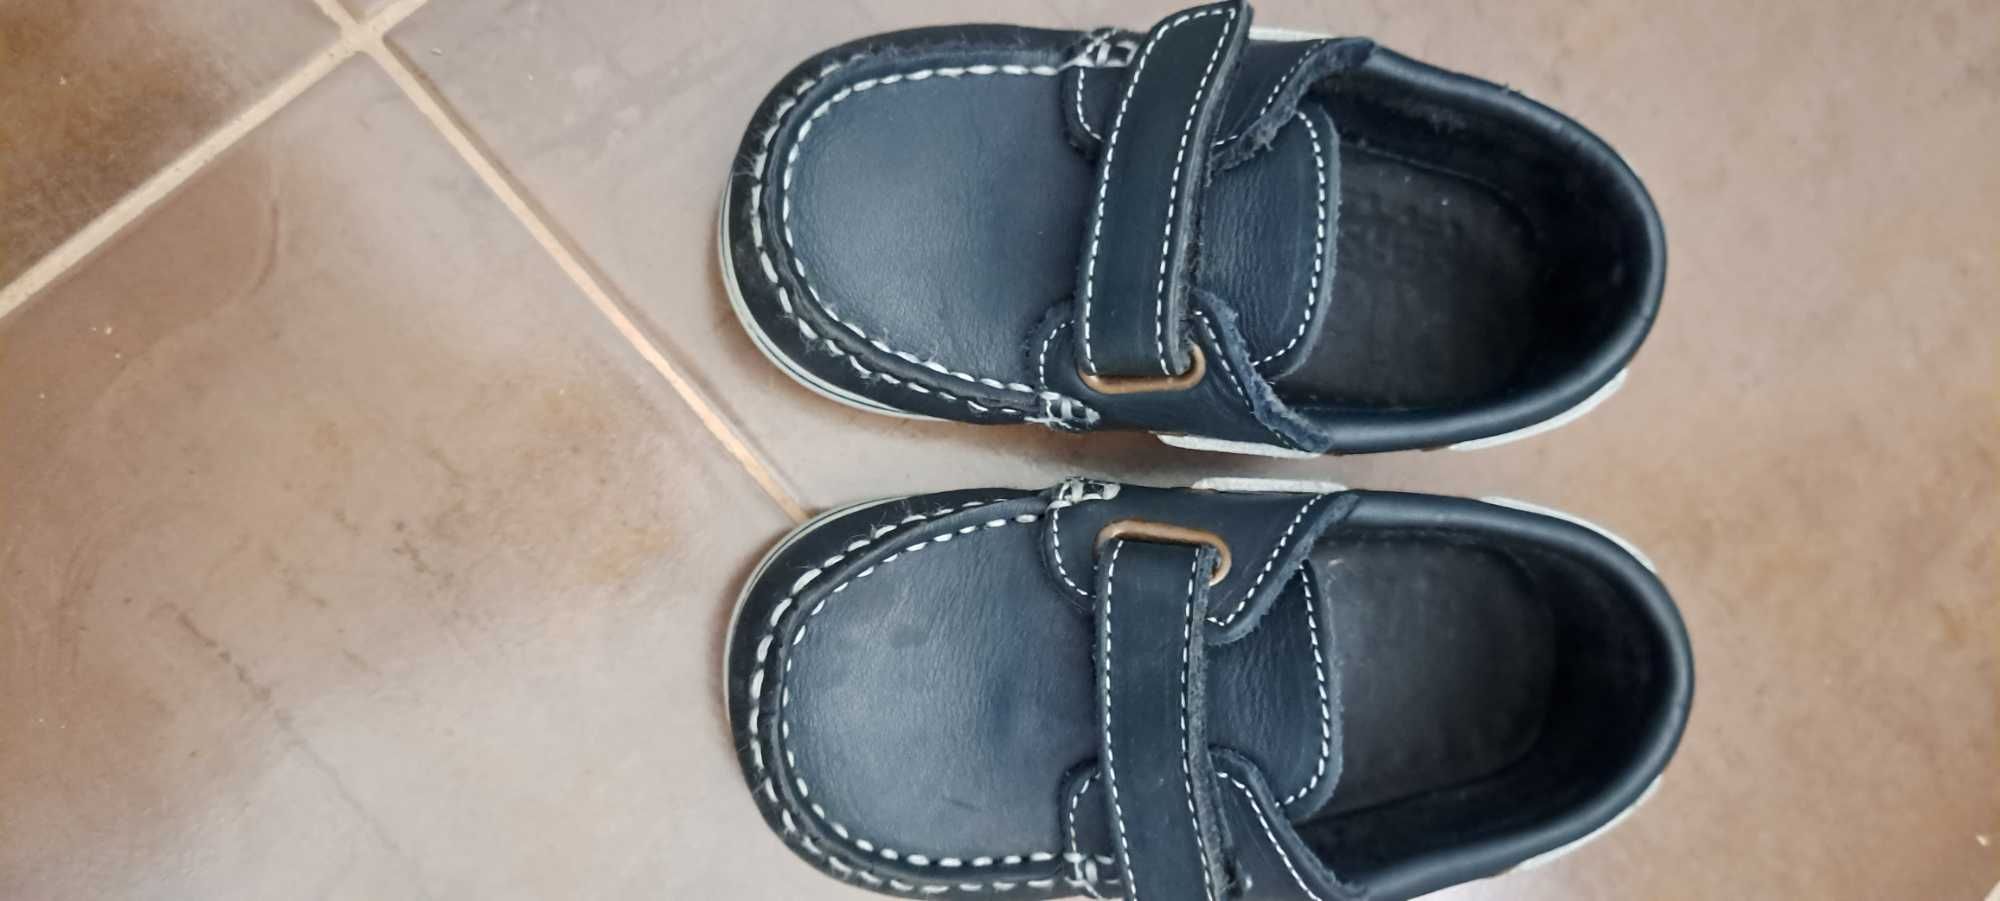 Sapato vela menino azul escuro